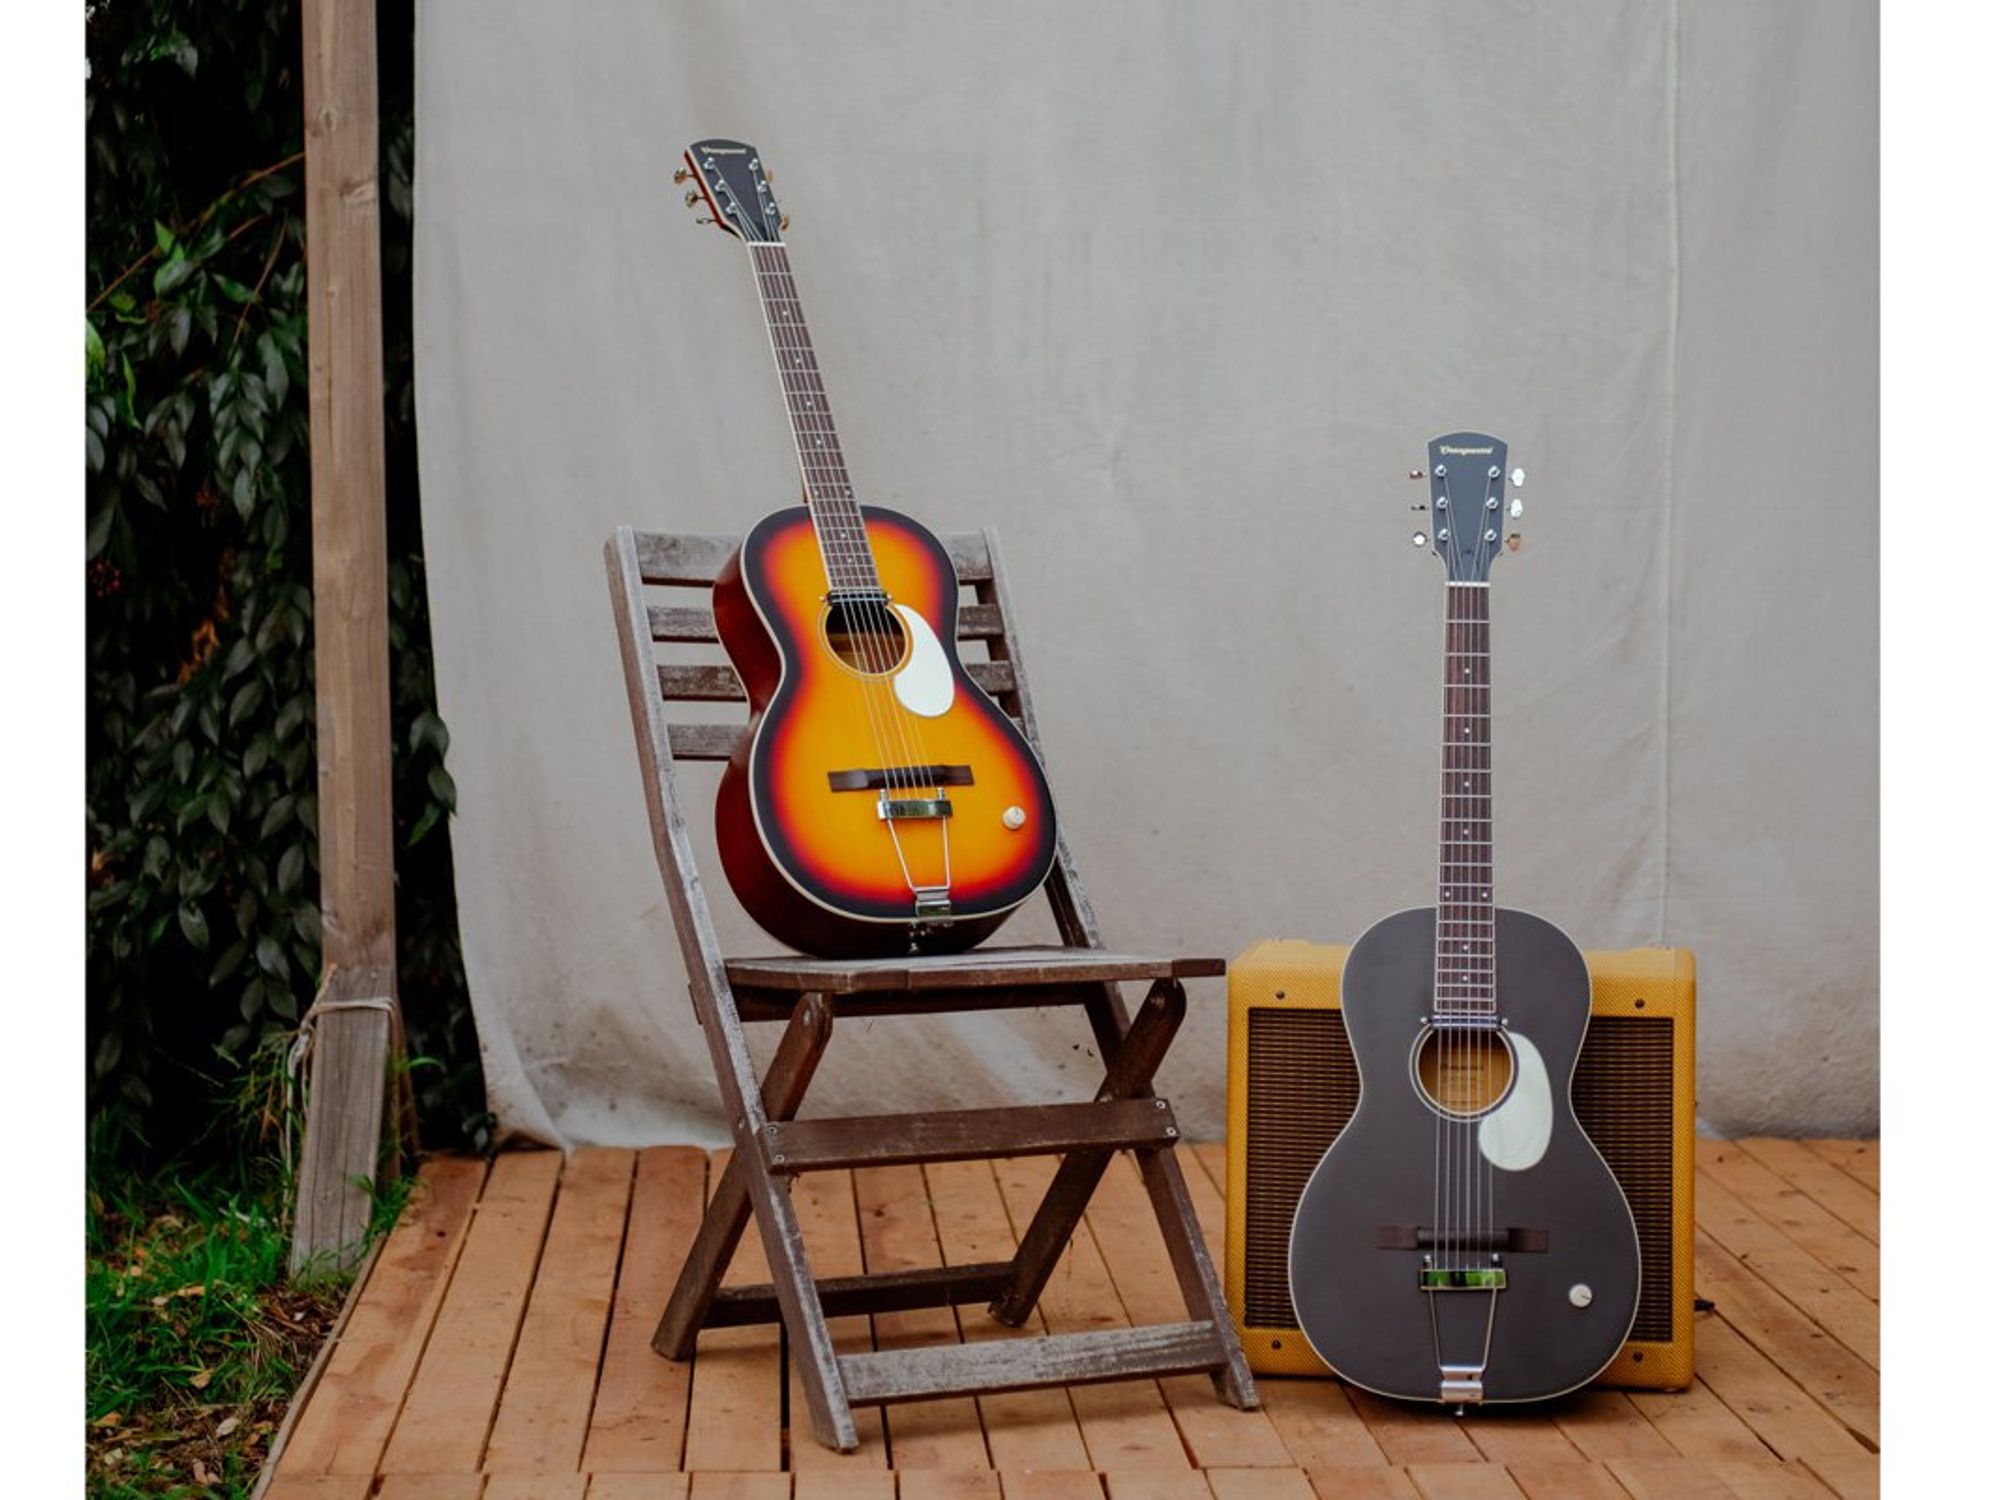 Orangewood Introduces the Juniper Rubber Bridge Guitar